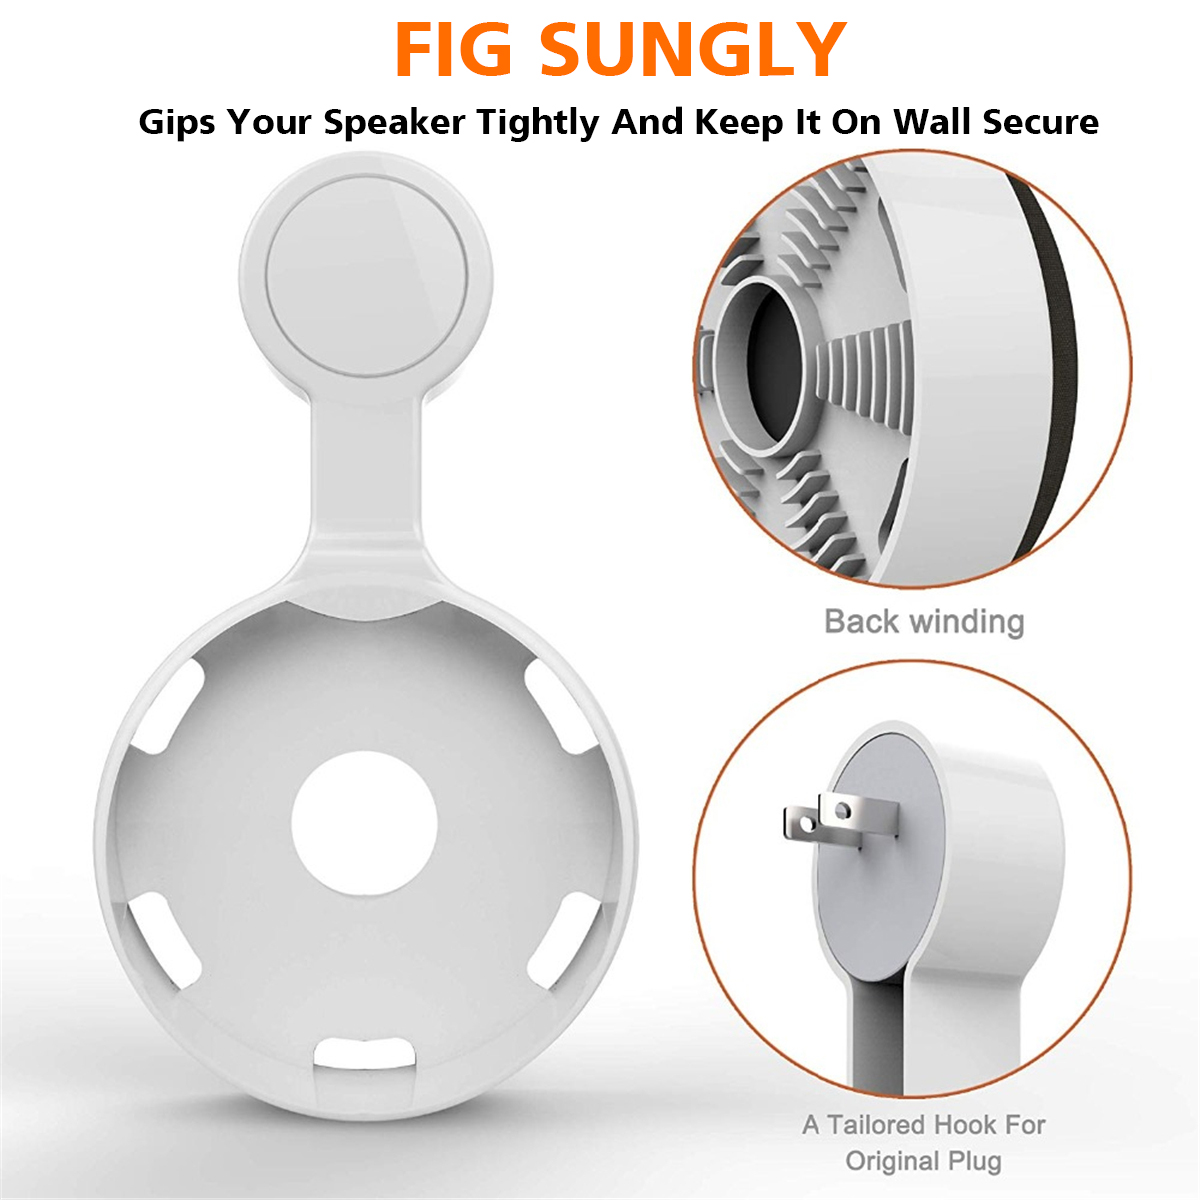 Portable-Wall-Mount-Holder-Plastic-Speaker-Stand-for-Google-Home-Speaker-1675631-2